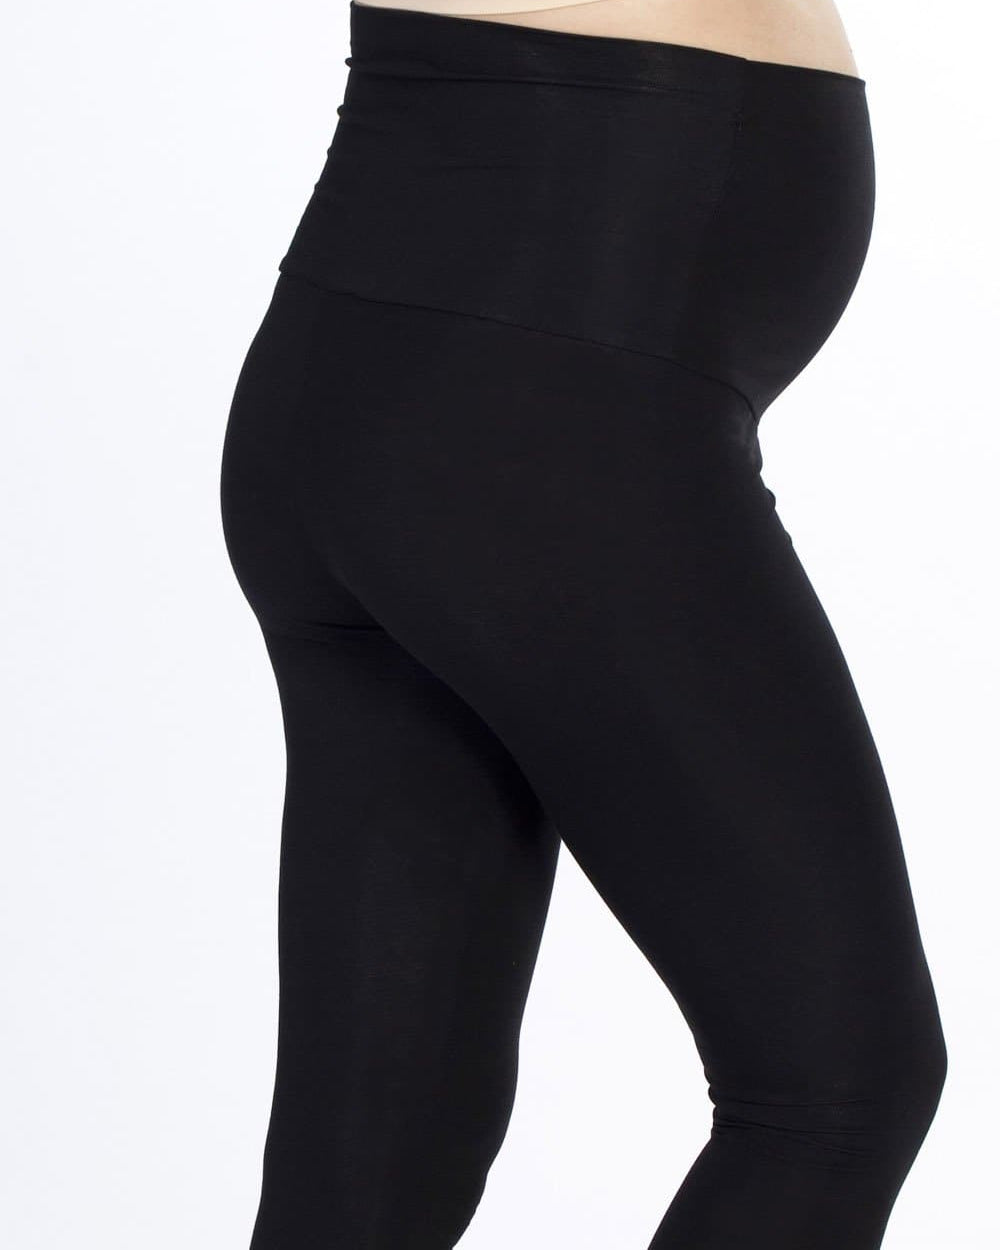 A model in 2 pack black maternity foldable waist leggings, side (4506713227367)